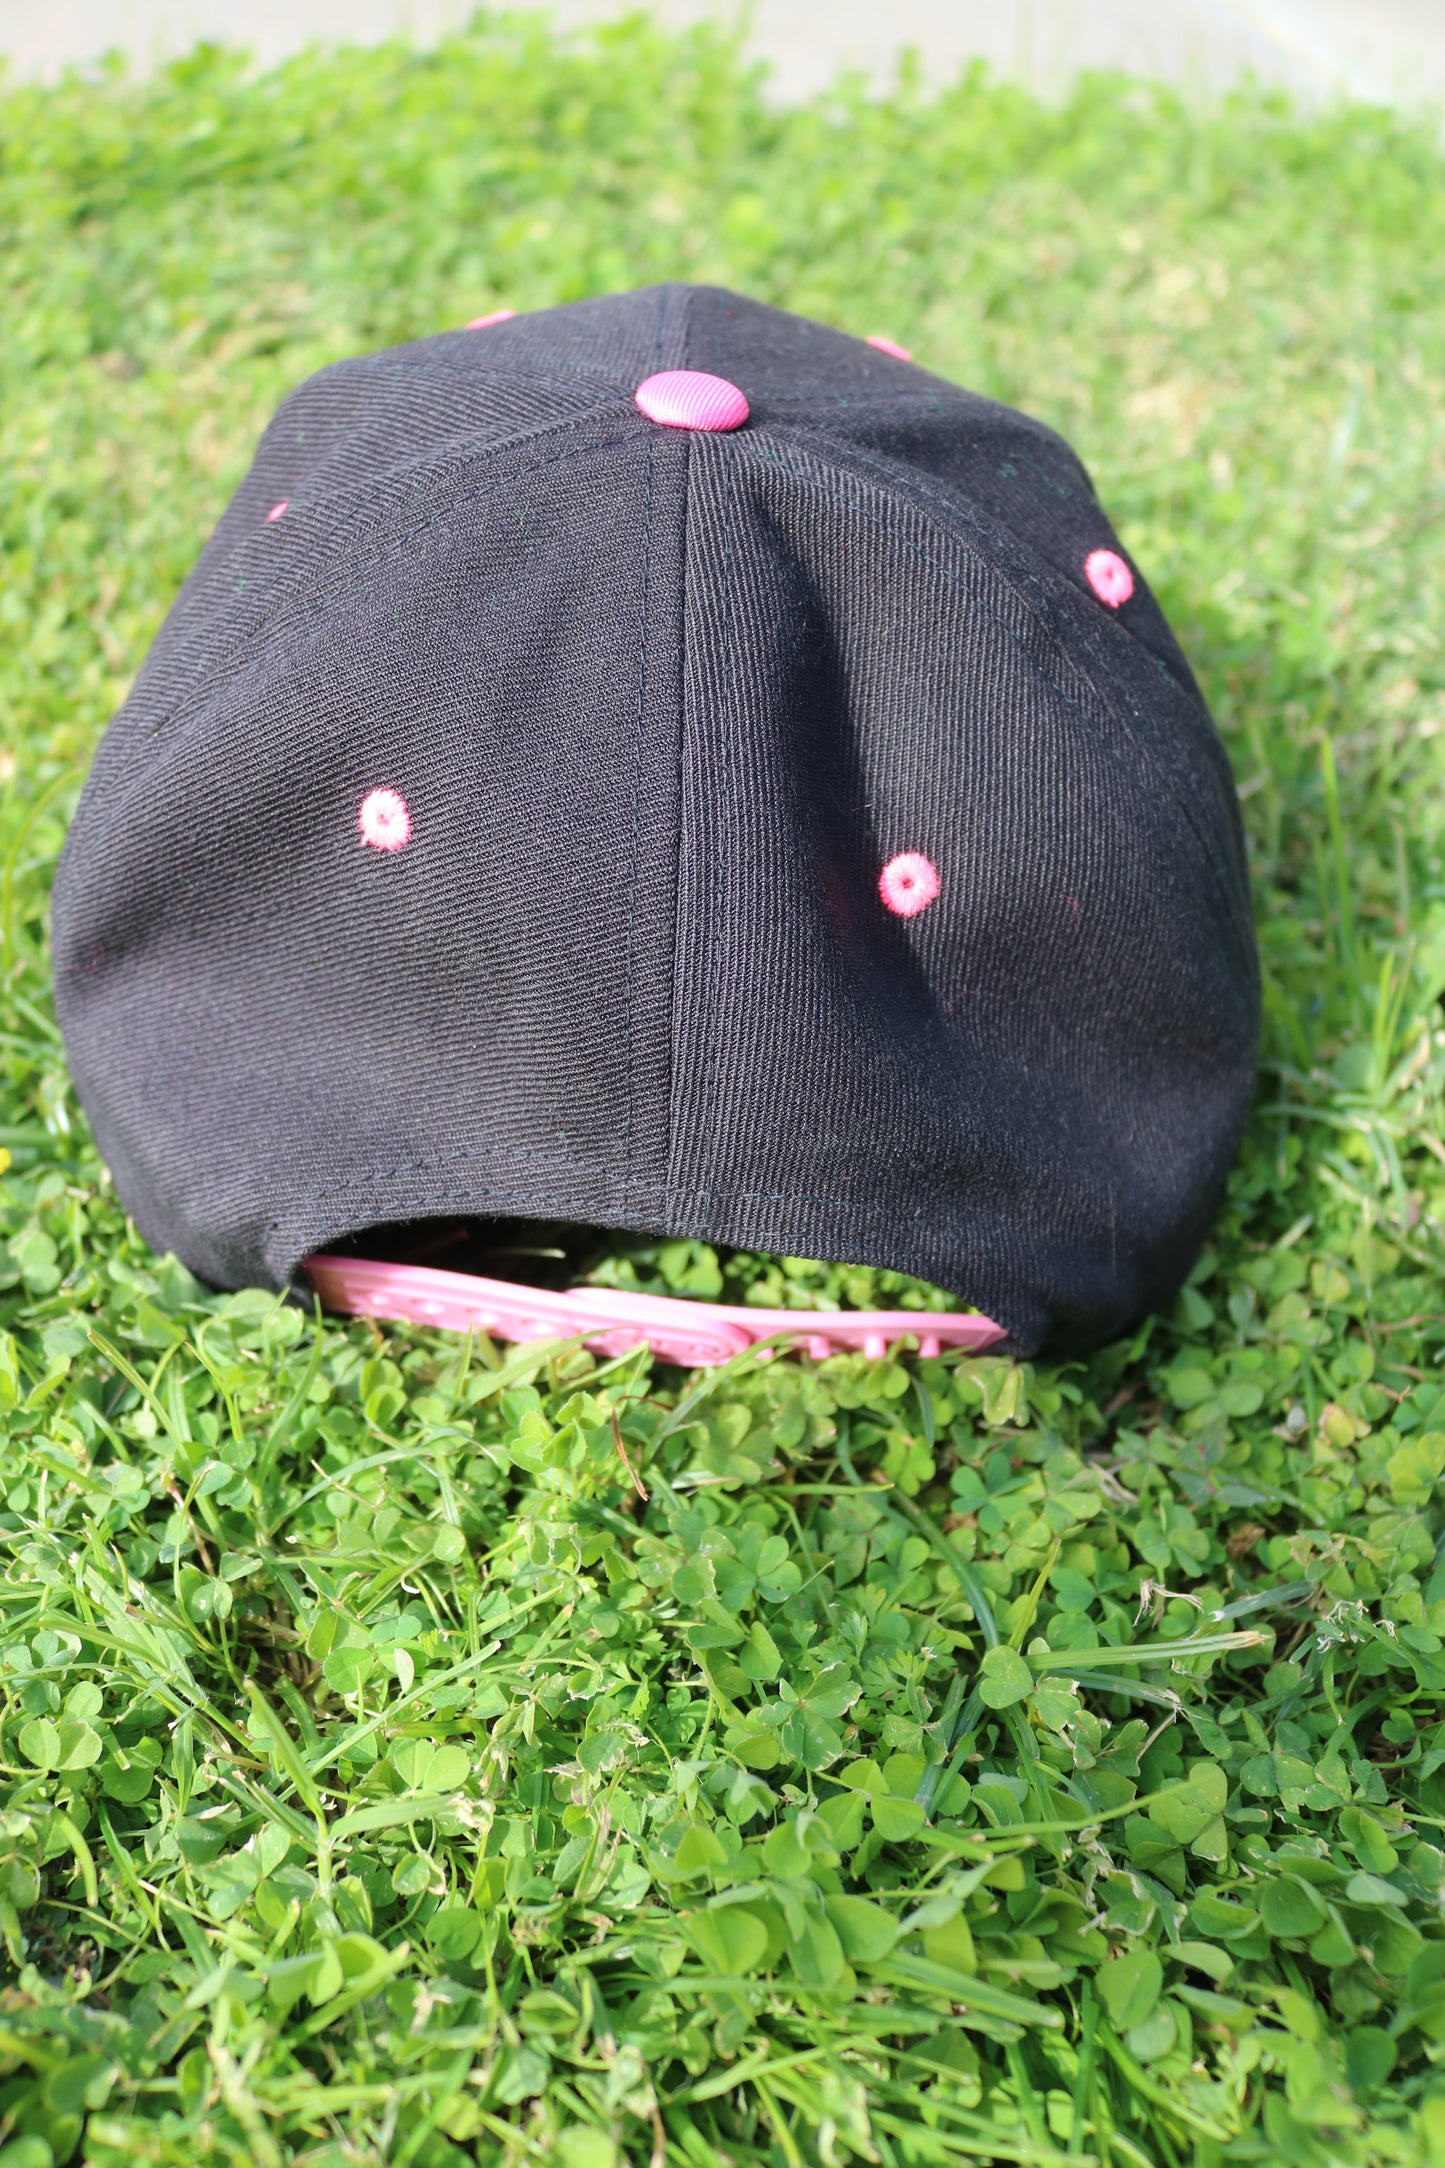 Desert Mermaid Black and Pink Snapback Hat